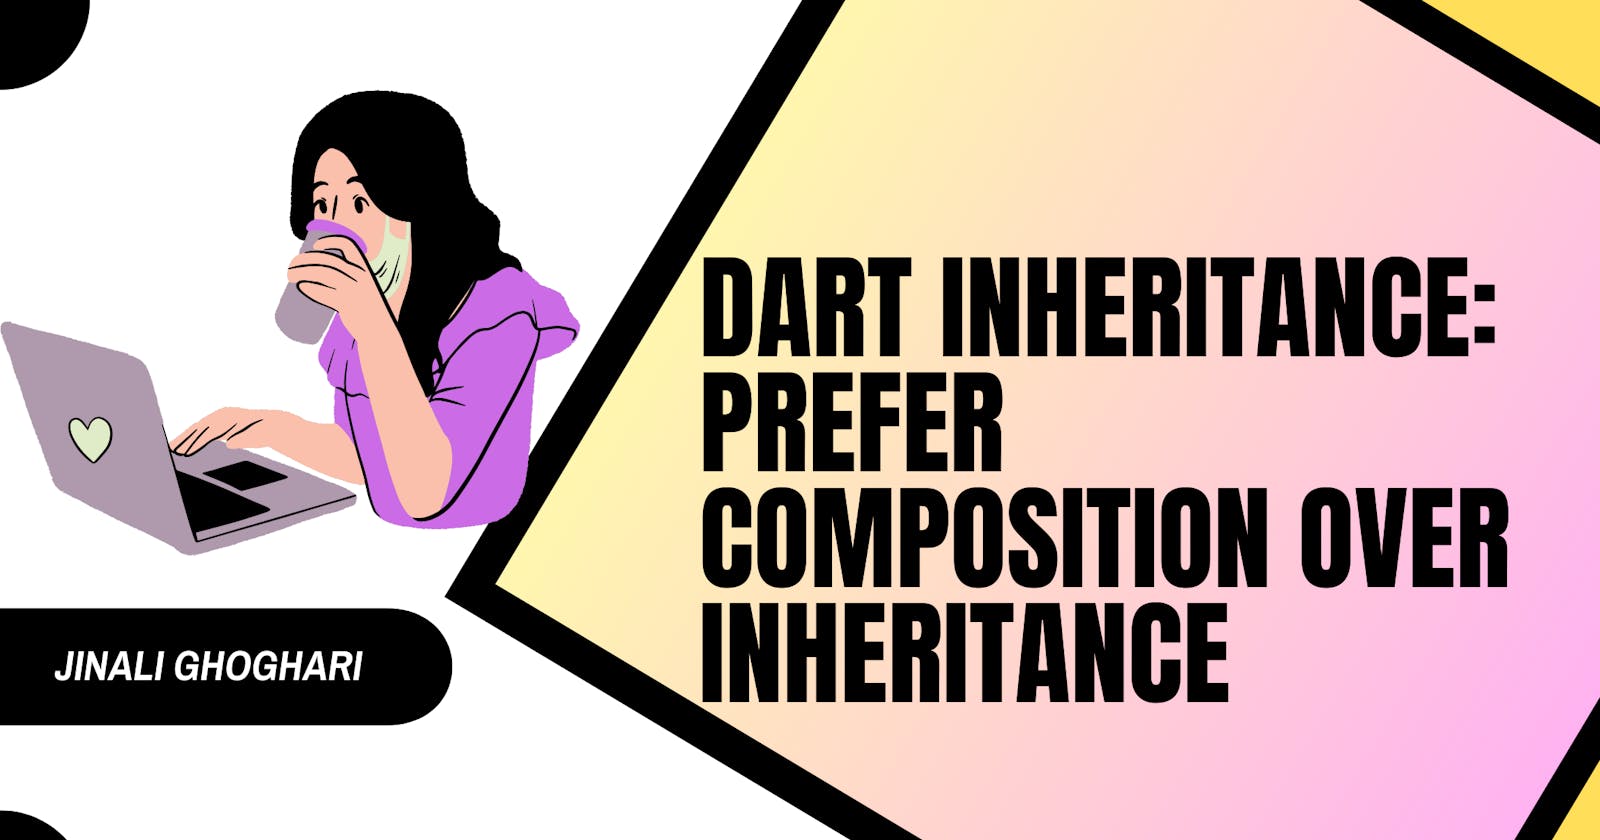 Dart Inheritance: Prefer Composition over Inheritance